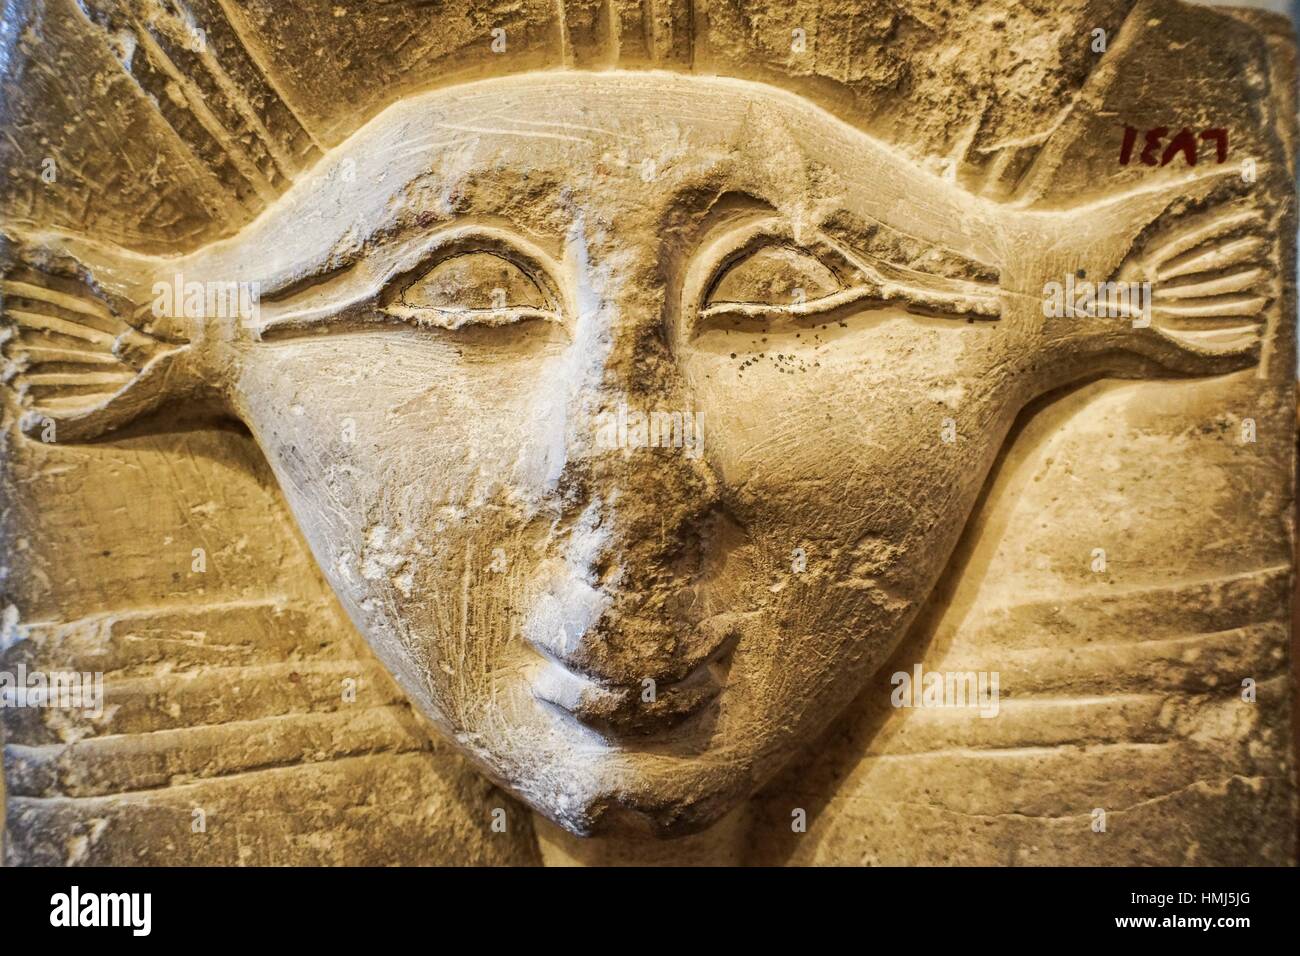 Hathor déesse de l'amour féminin et la maternité. Collection pharaonique égyptienne. Musée Gayer Anderson. Le Caire, Egypte Banque D'Images